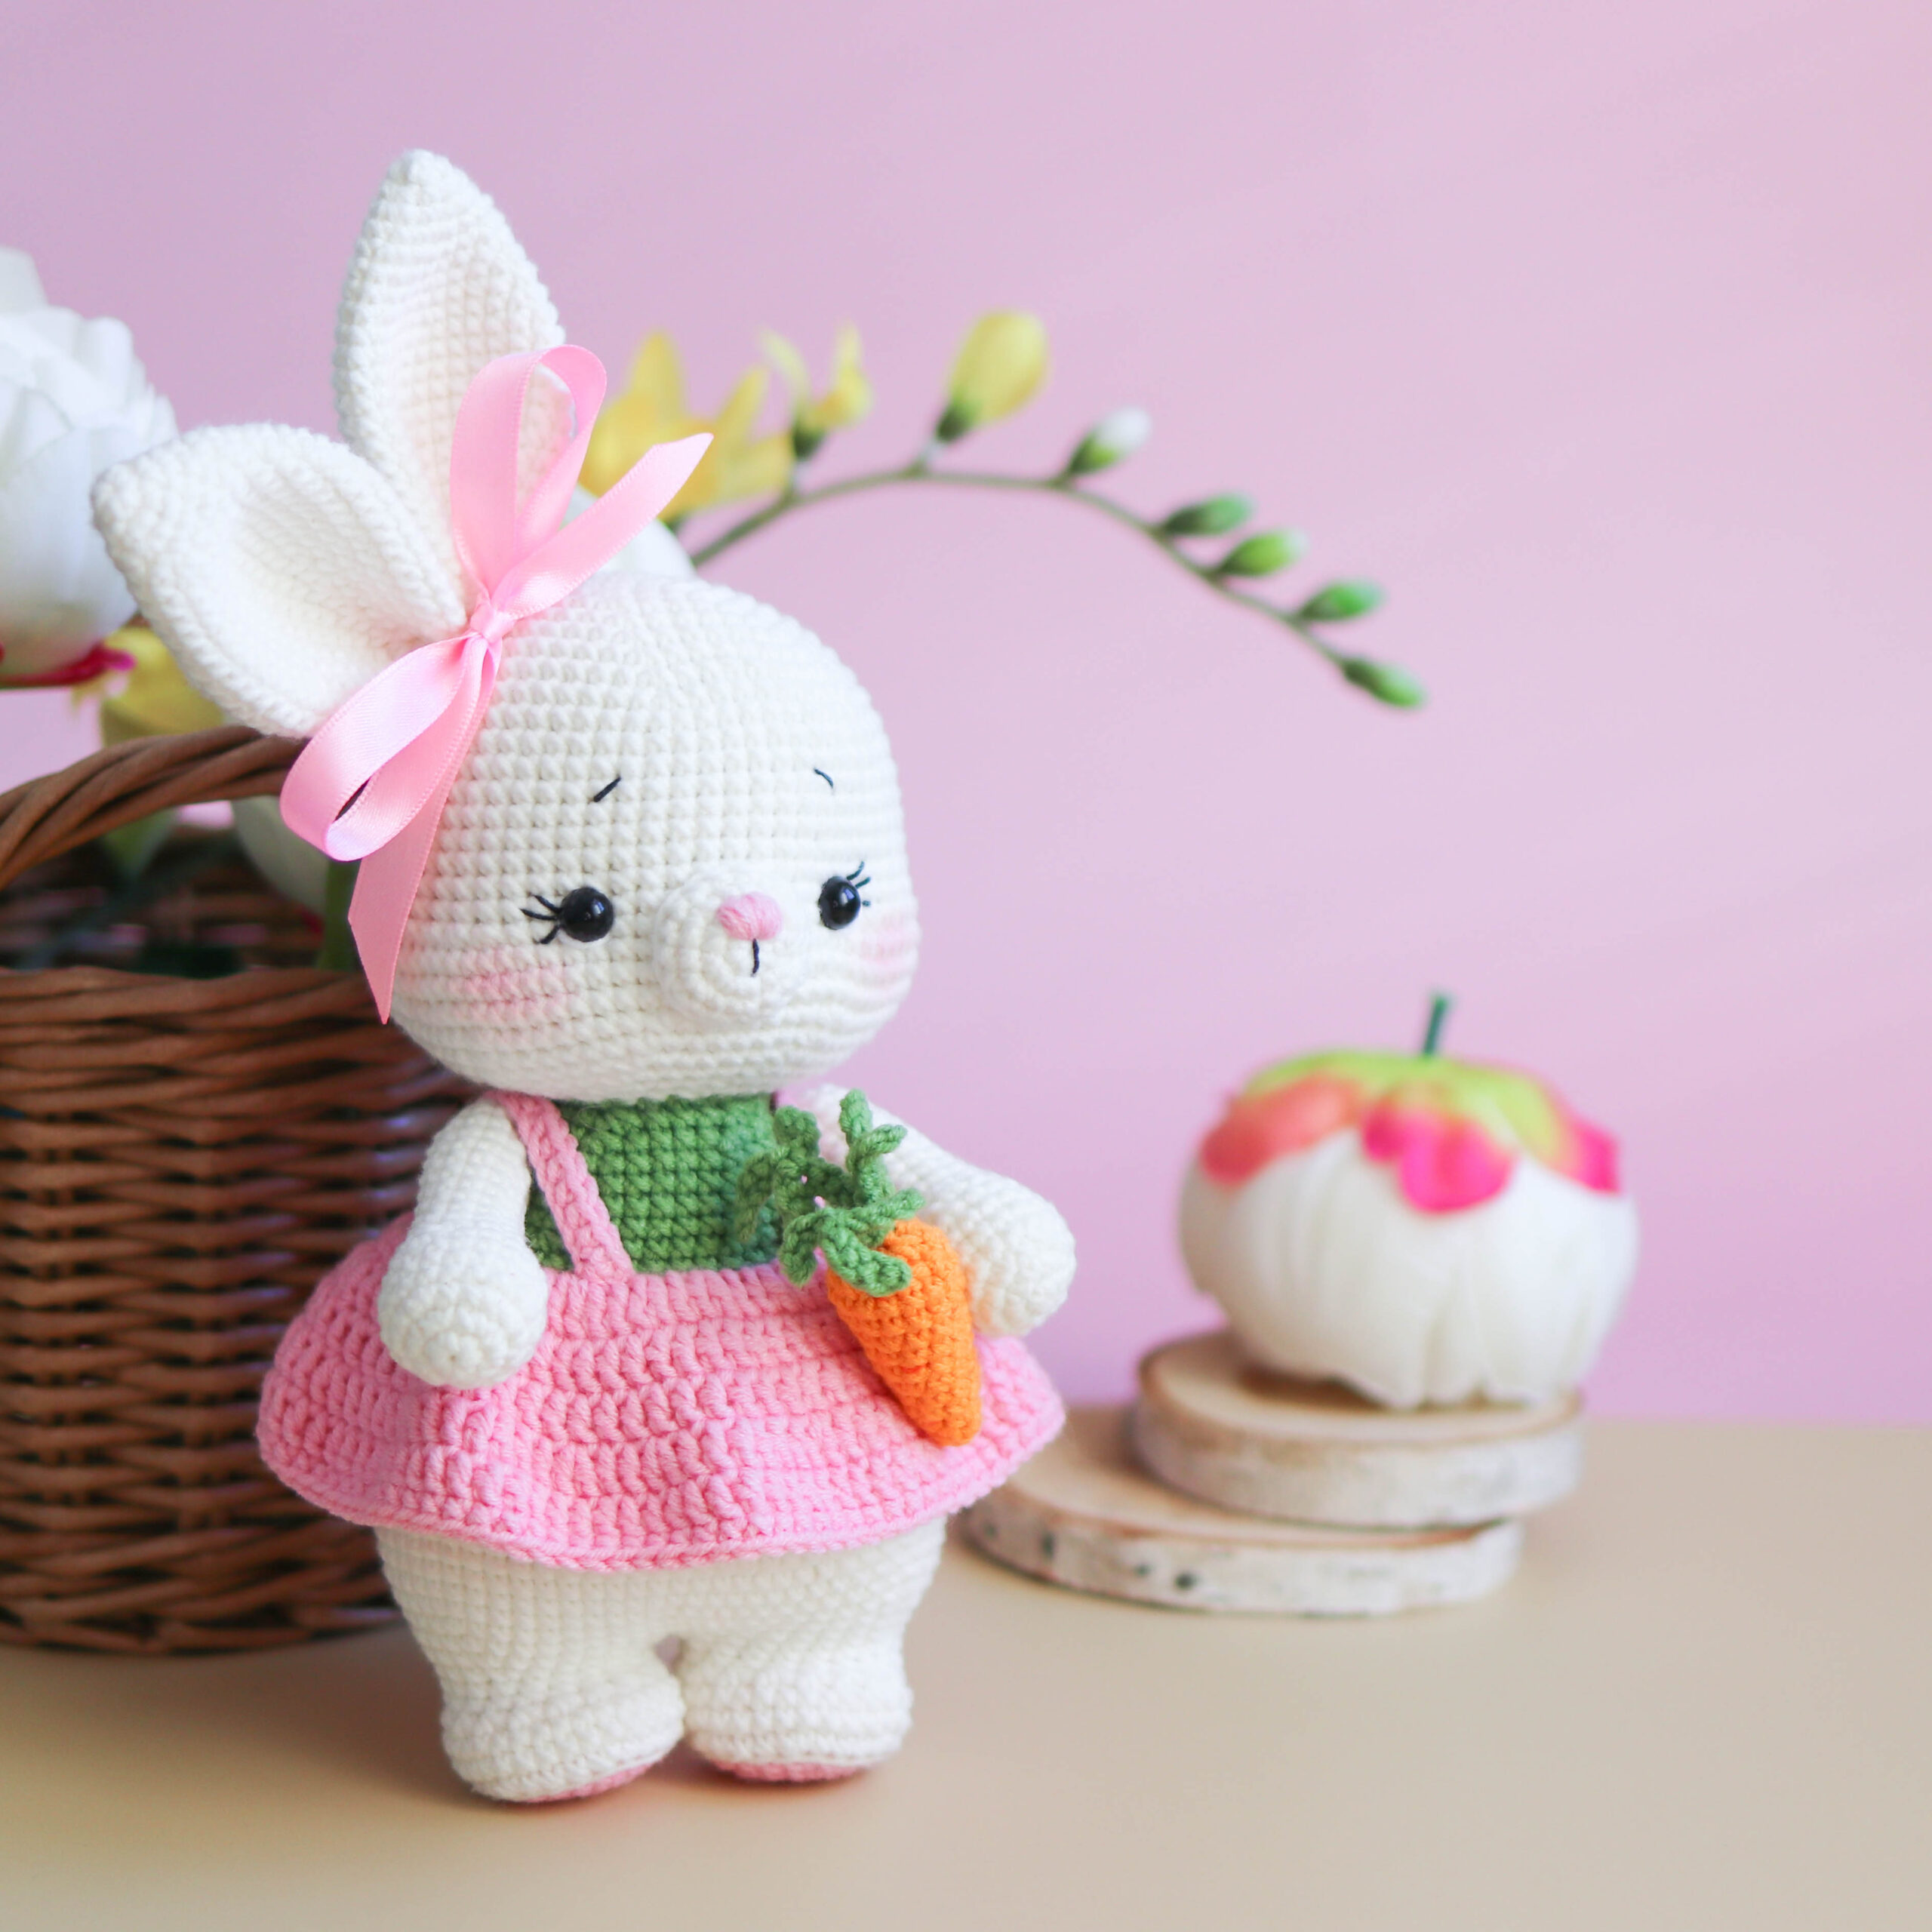 Spring bunny - amigurumi pattern